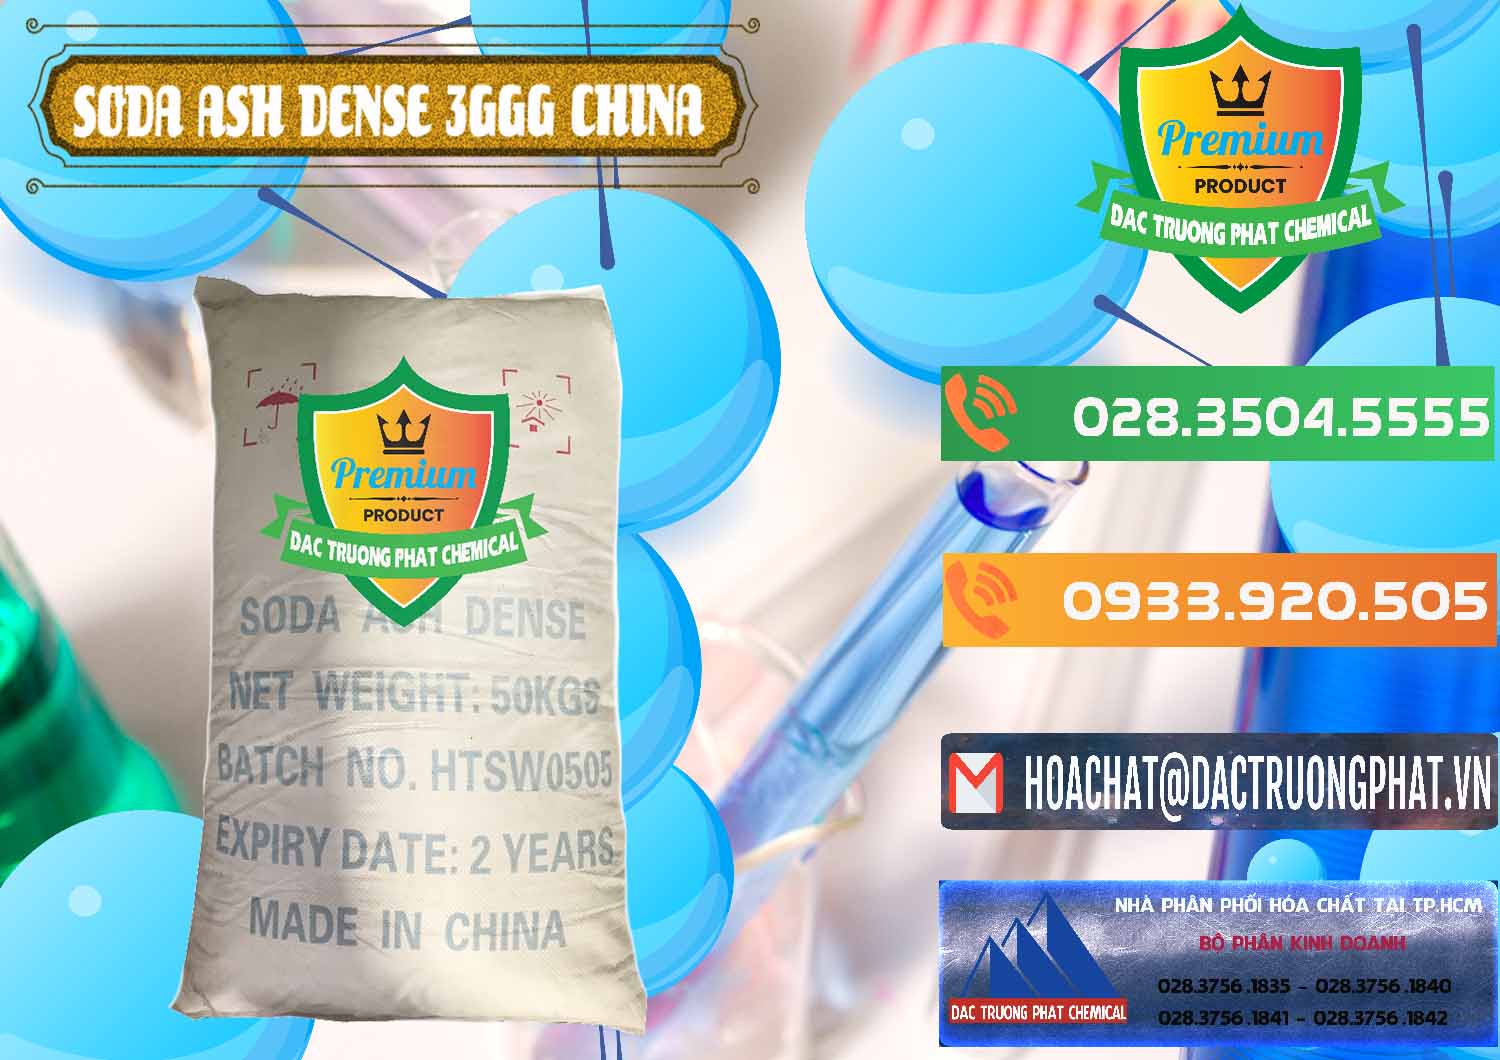 Cty nhập khẩu & bán Soda Ash Dense - NA2CO3 3GGG Trung Quốc China - 0335 - Công ty chuyên bán ( phân phối ) hóa chất tại TP.HCM - hoachatxulynuoc.com.vn